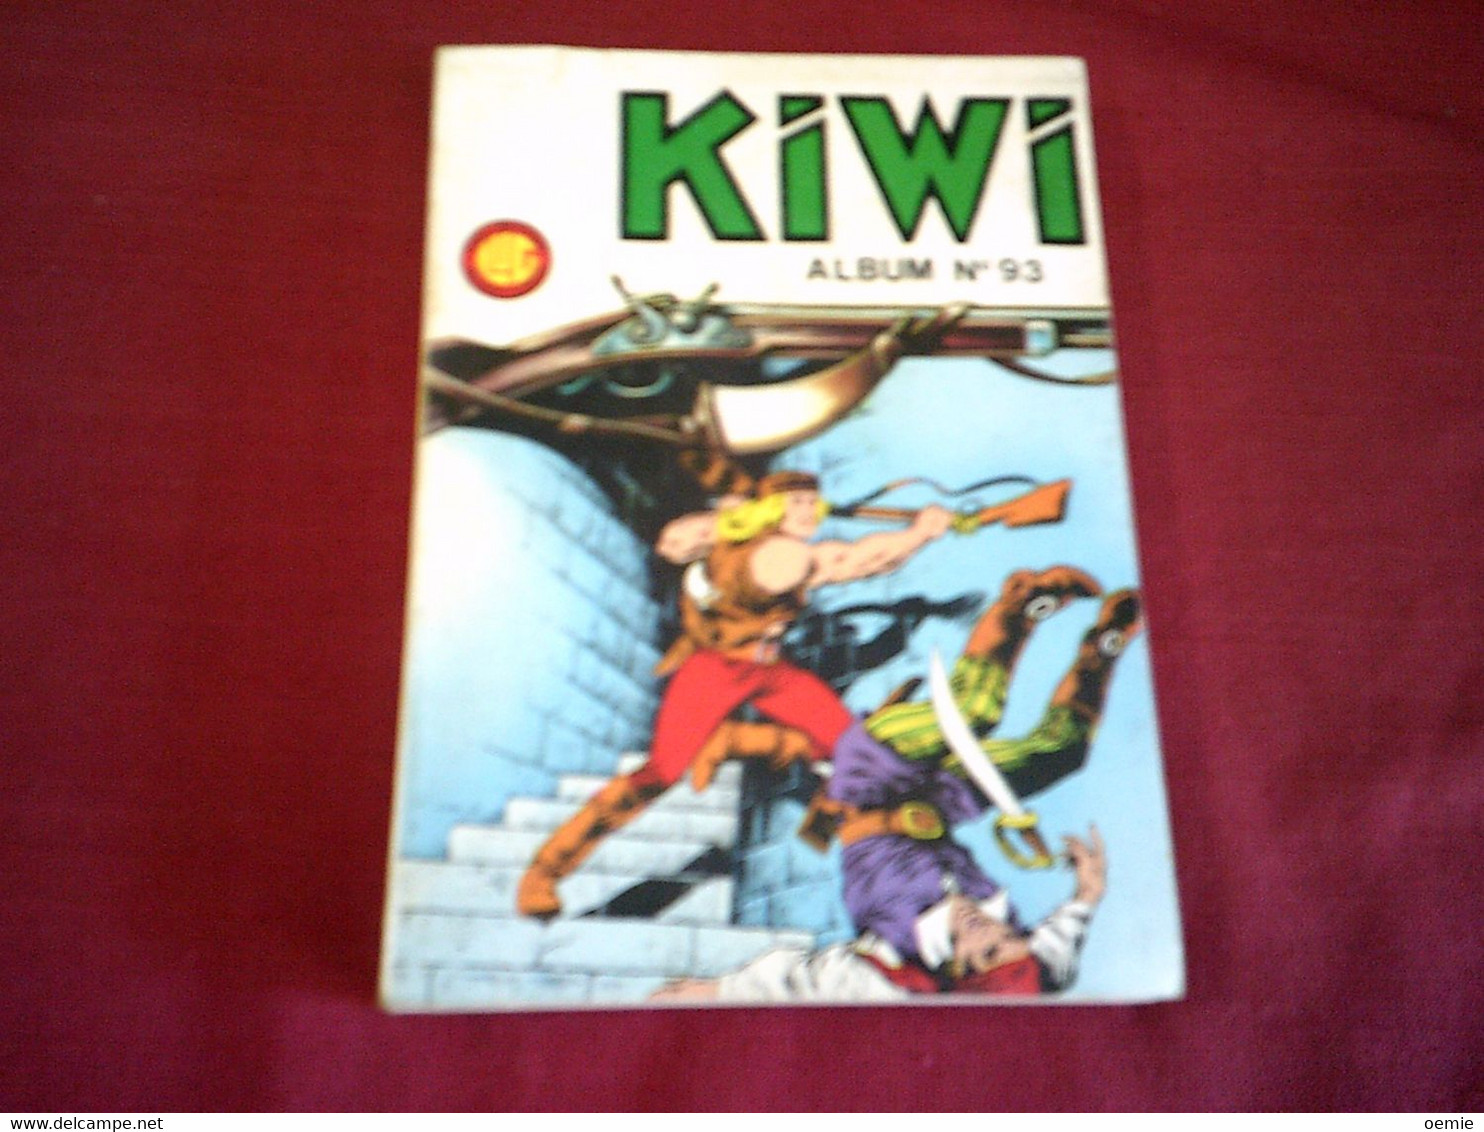 KIWI ALBUM N°  93 - Kiwi